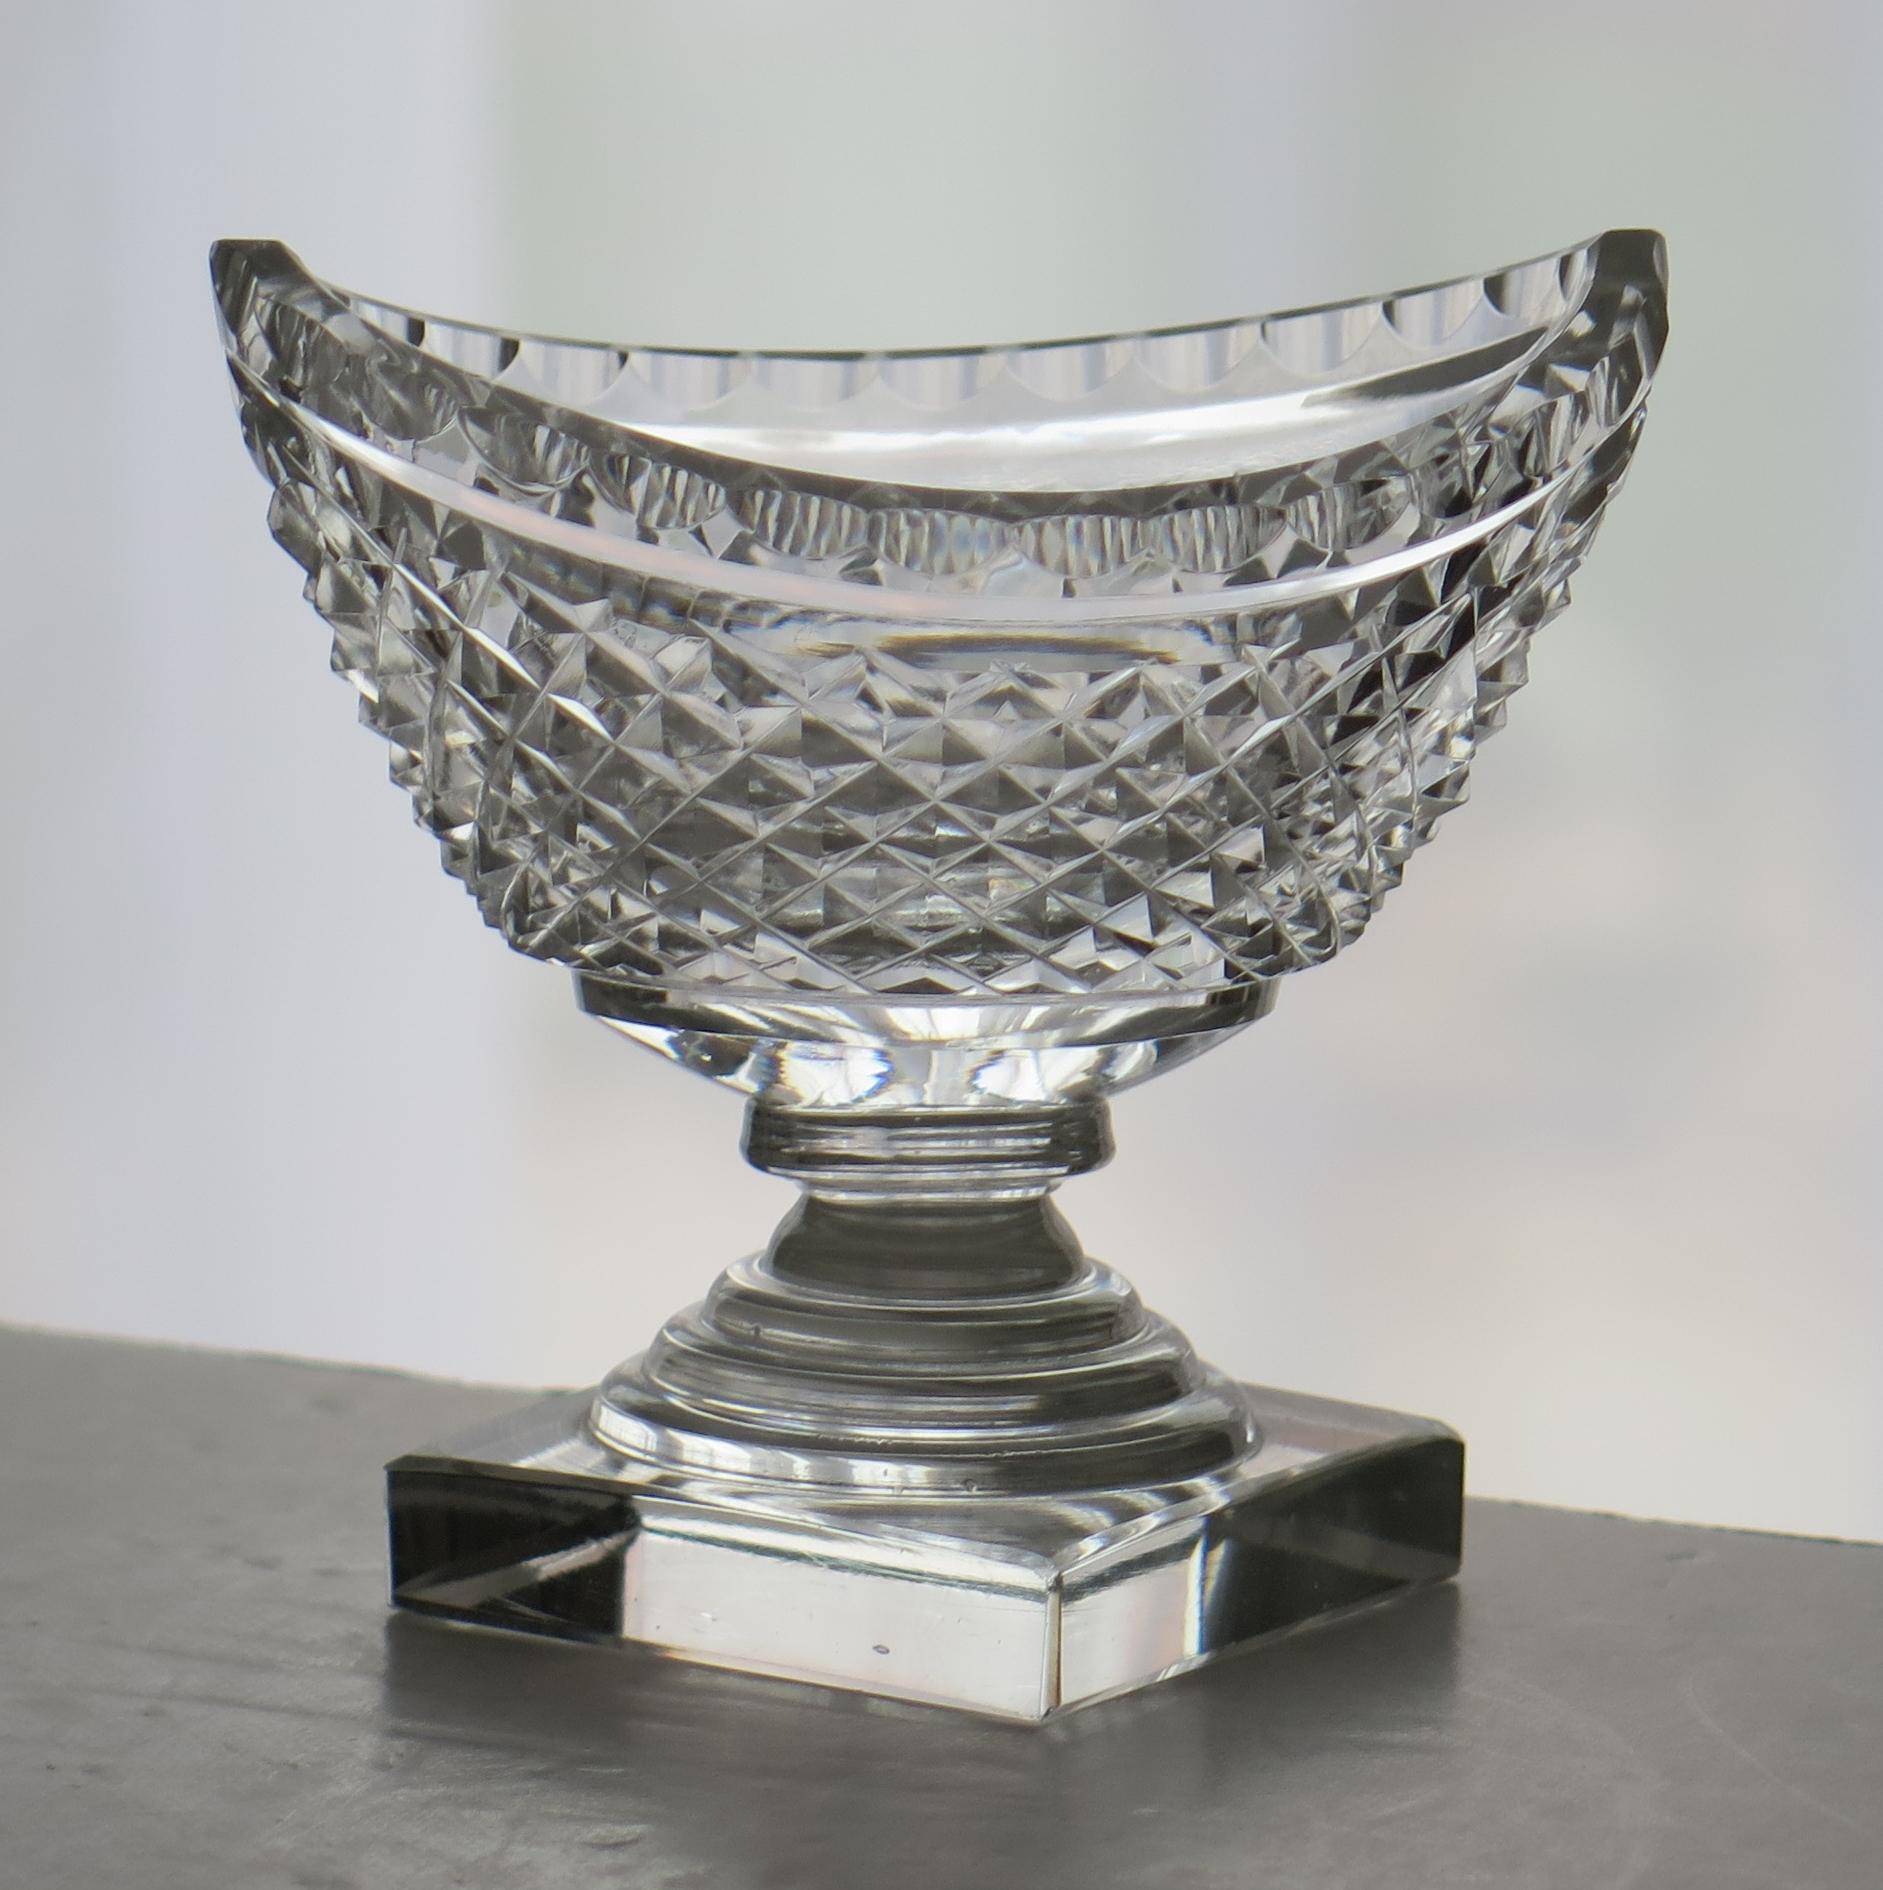 Es handelt sich um ein feines irisches geschliffenes Glas oder Kristall Salz, das im 18. Jahrhundert, um 1790, aus Bleiglas hergestellt wurde.

Die ovale Schale in Bootsform ist gut handgeschliffen und sitzt auf einem gestuften Fuß über einem